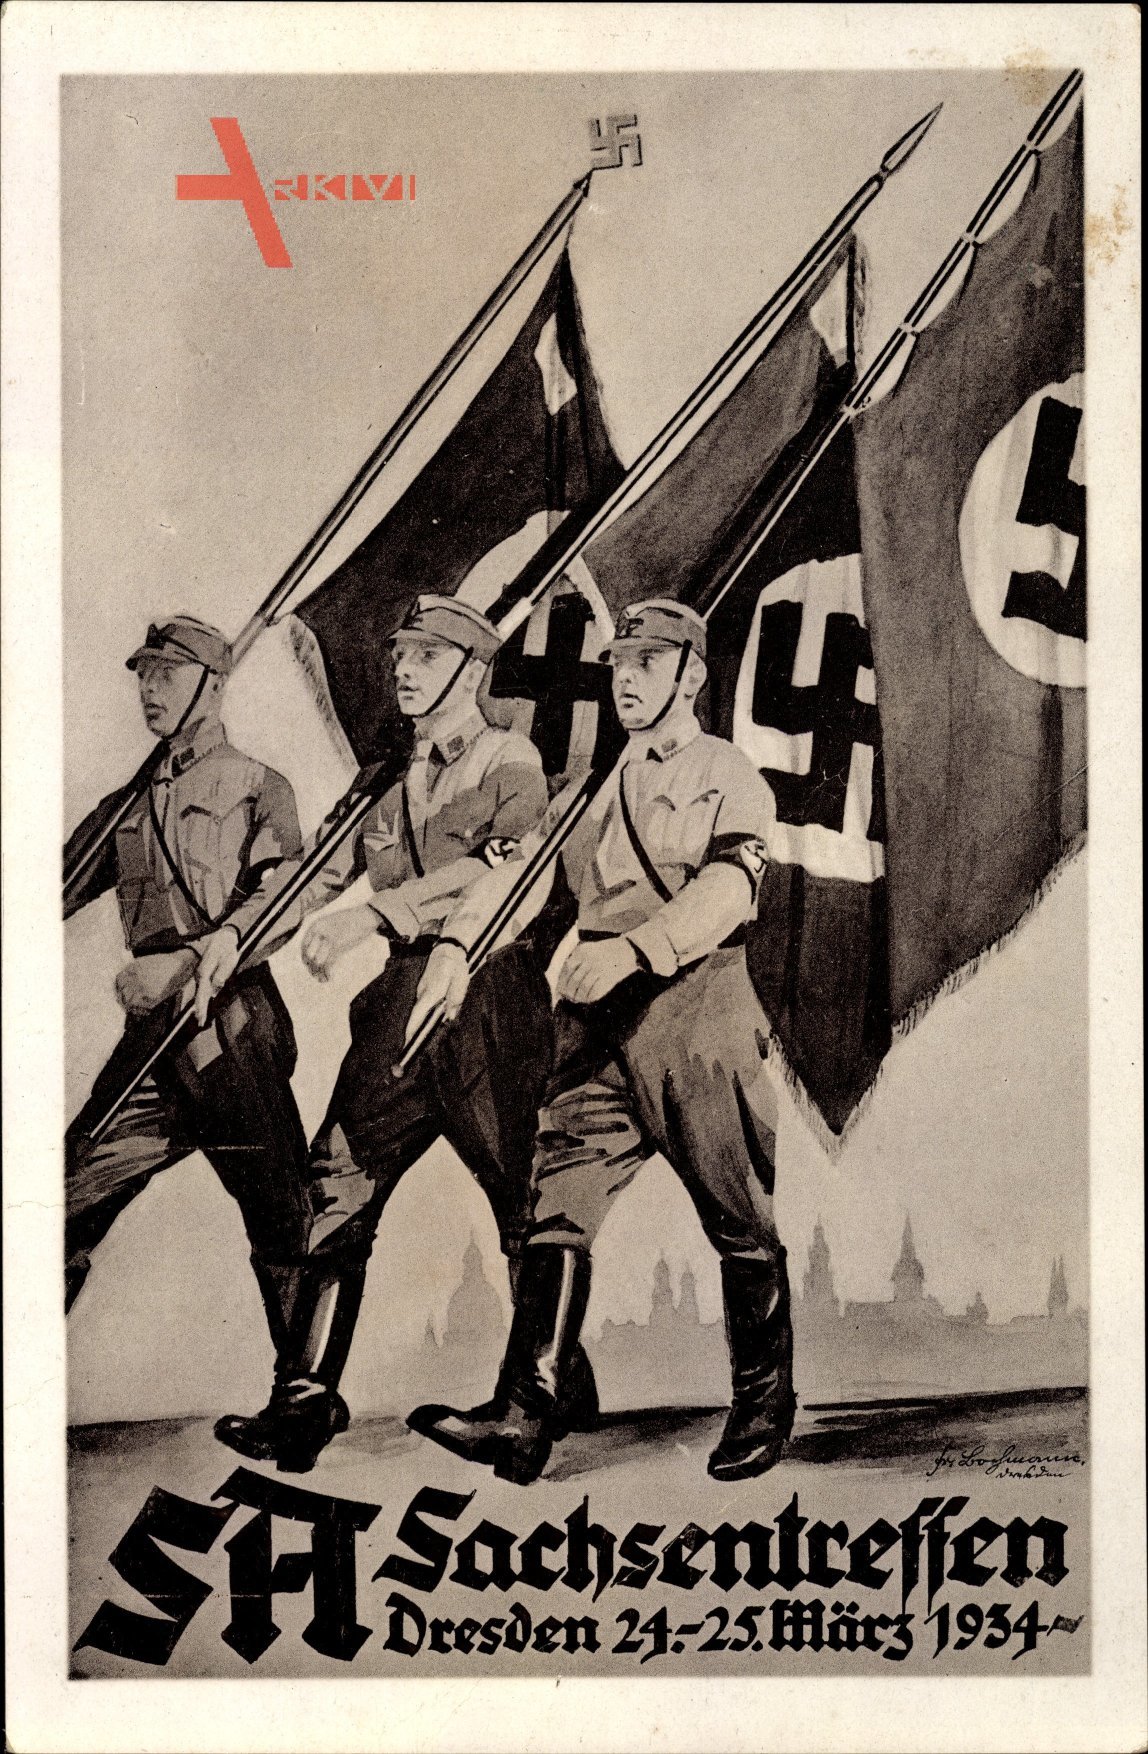 Dresden, SA Sachsentreffen, 24-25. März 1934